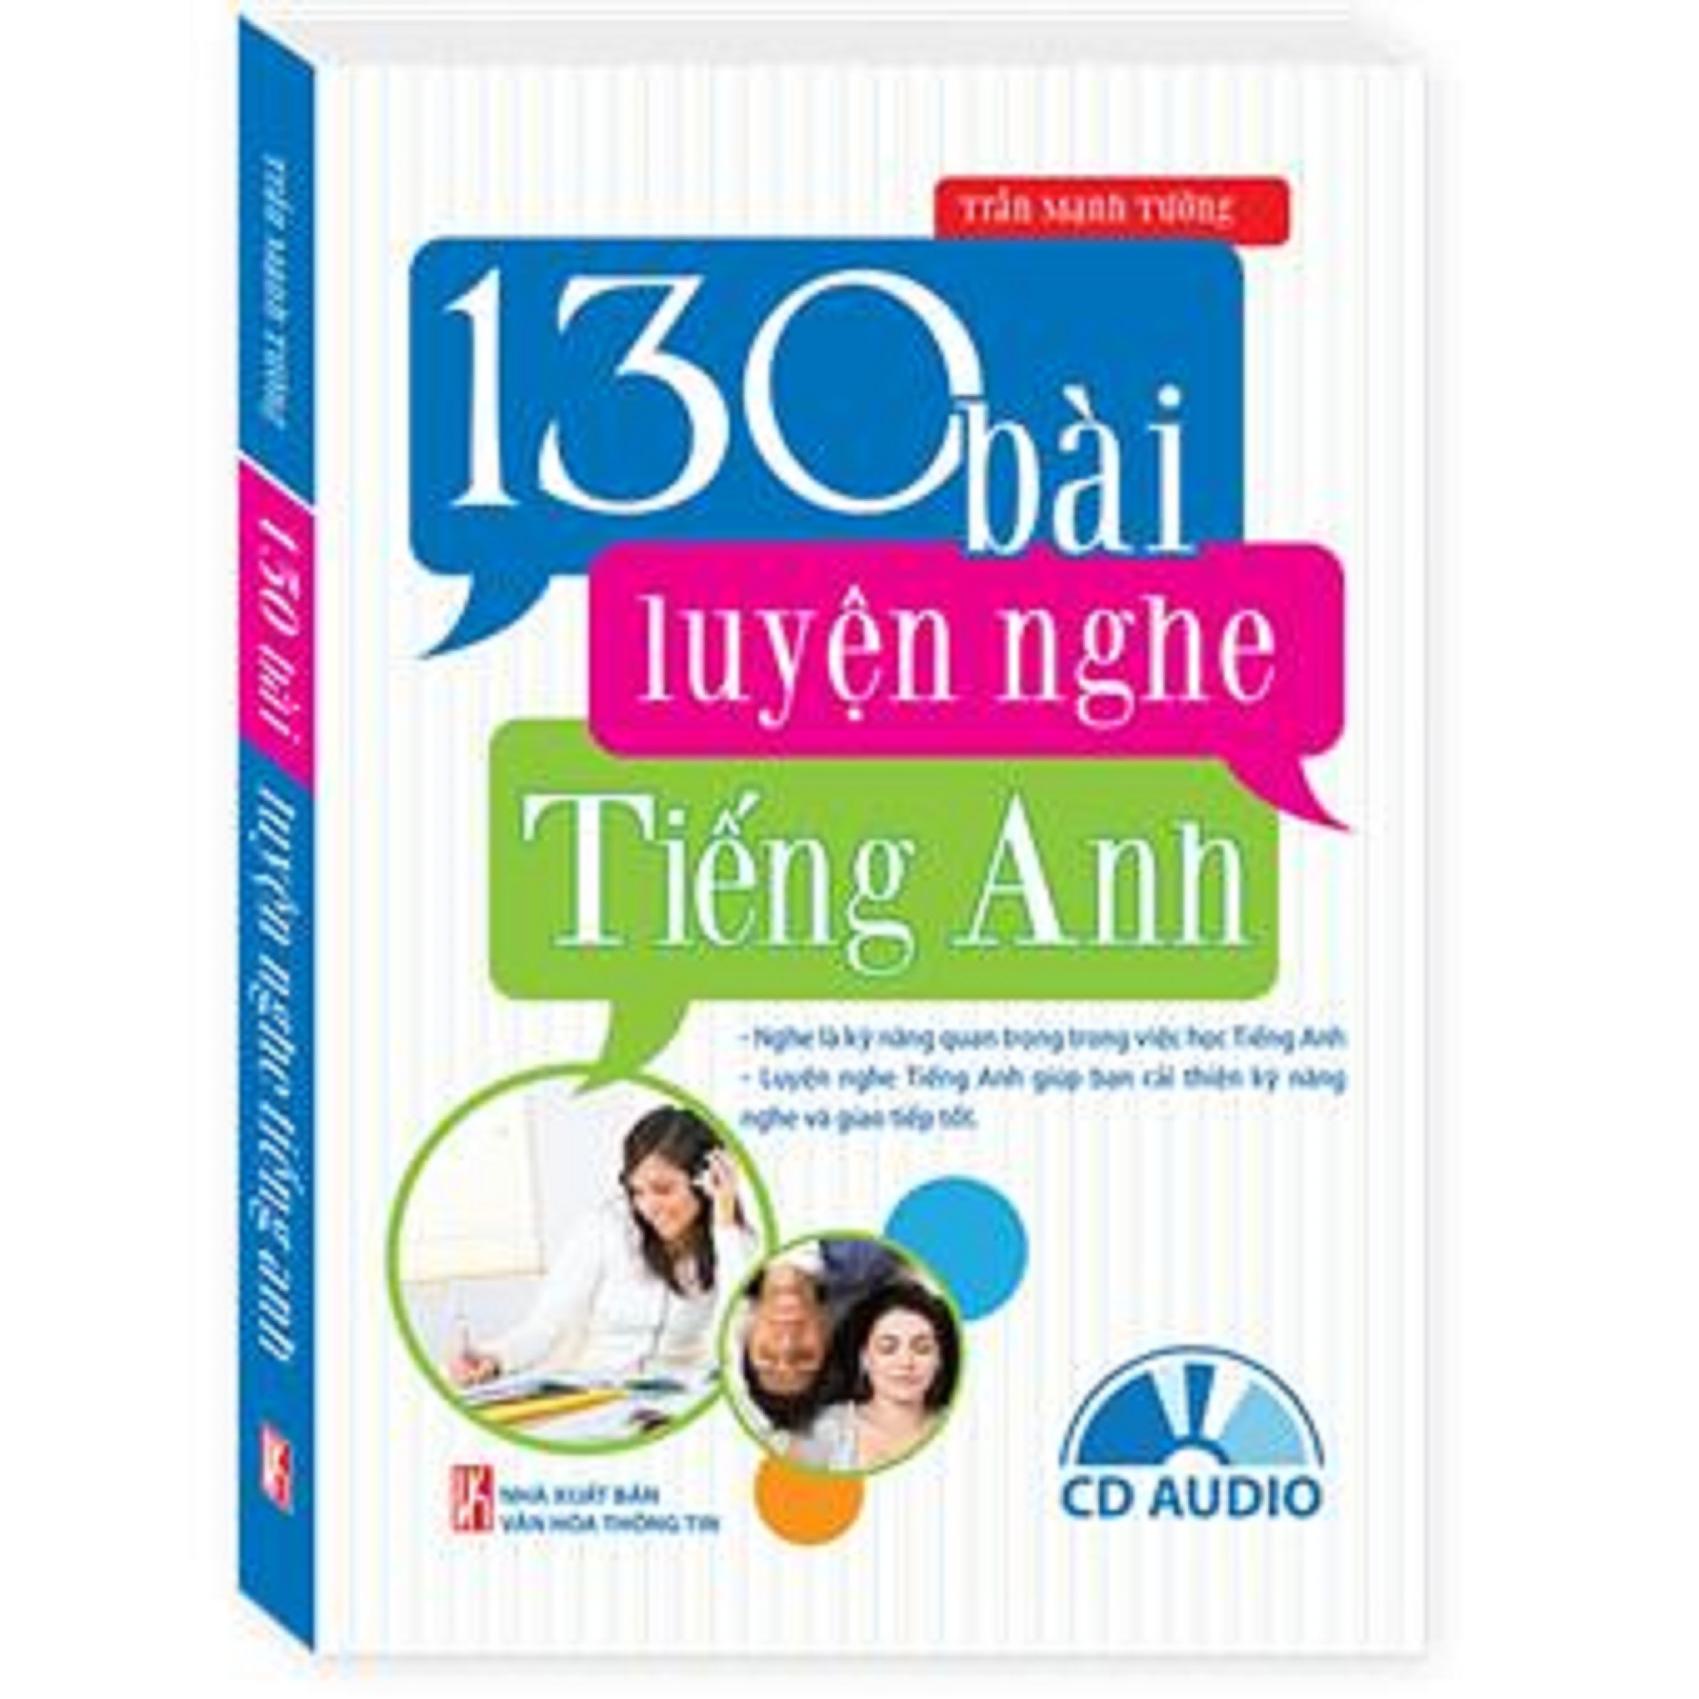 130 bài luyện nghe Tiếng Anh (Kèm CD Audio)